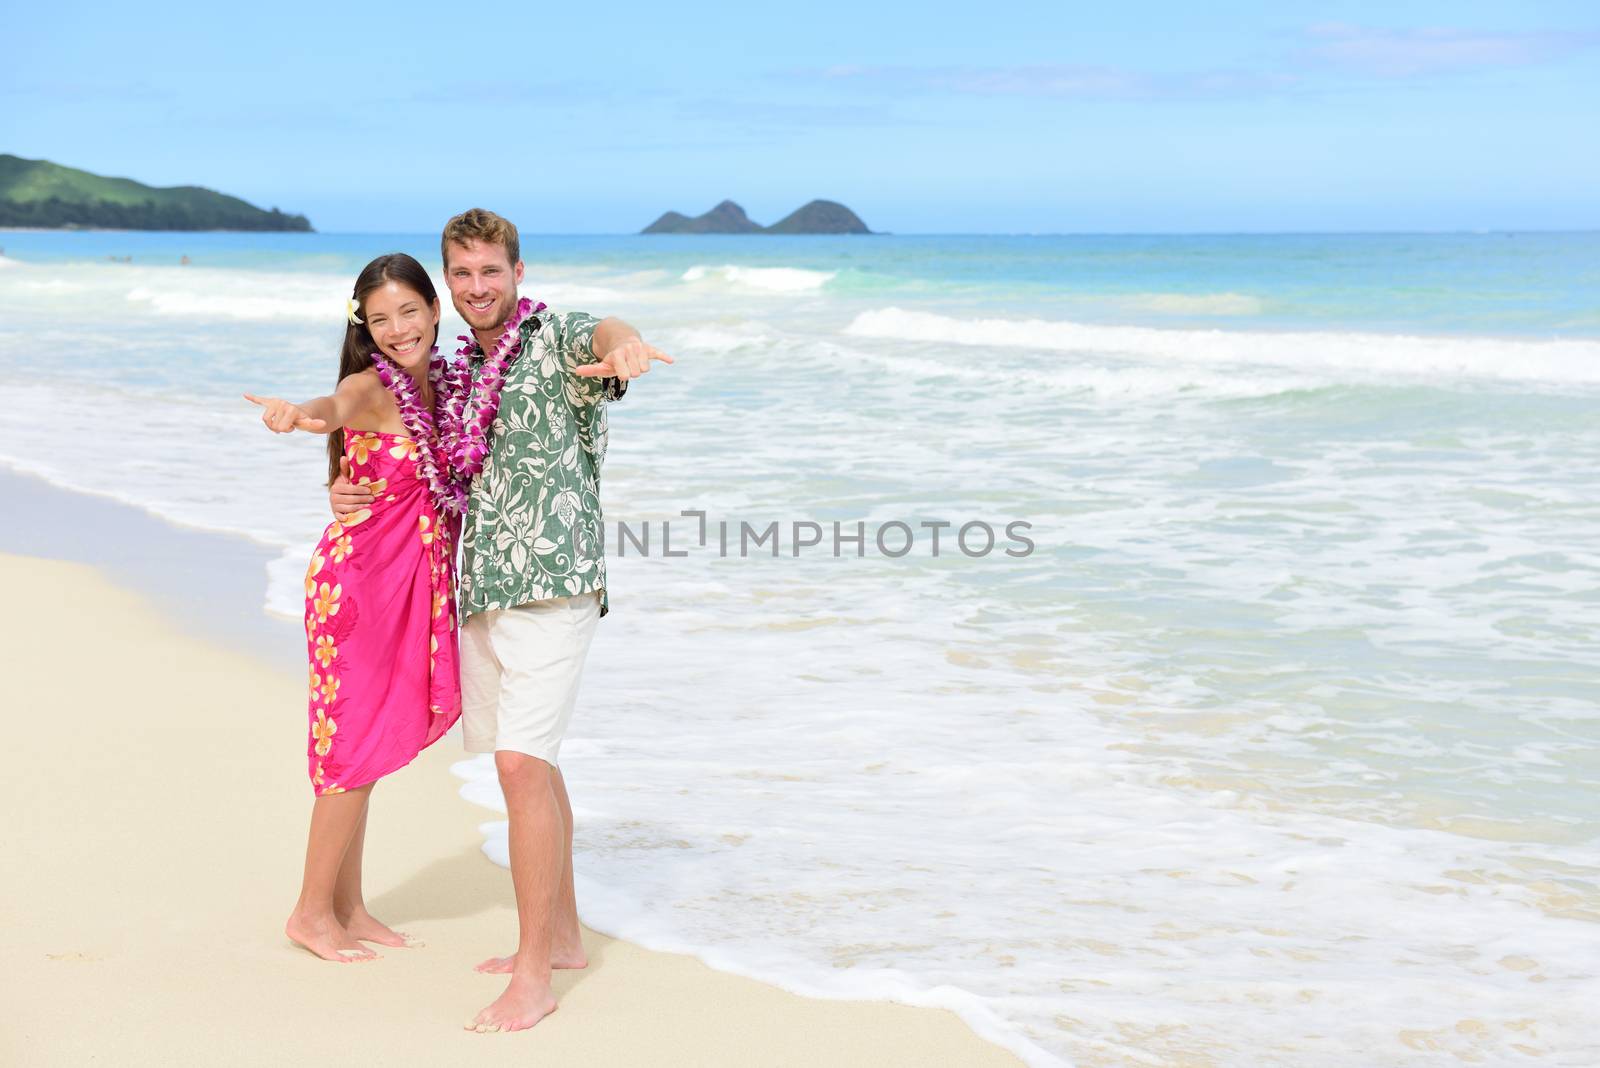 Aloha couple on Hawaiian beach - Hawaii vacations by Maridav